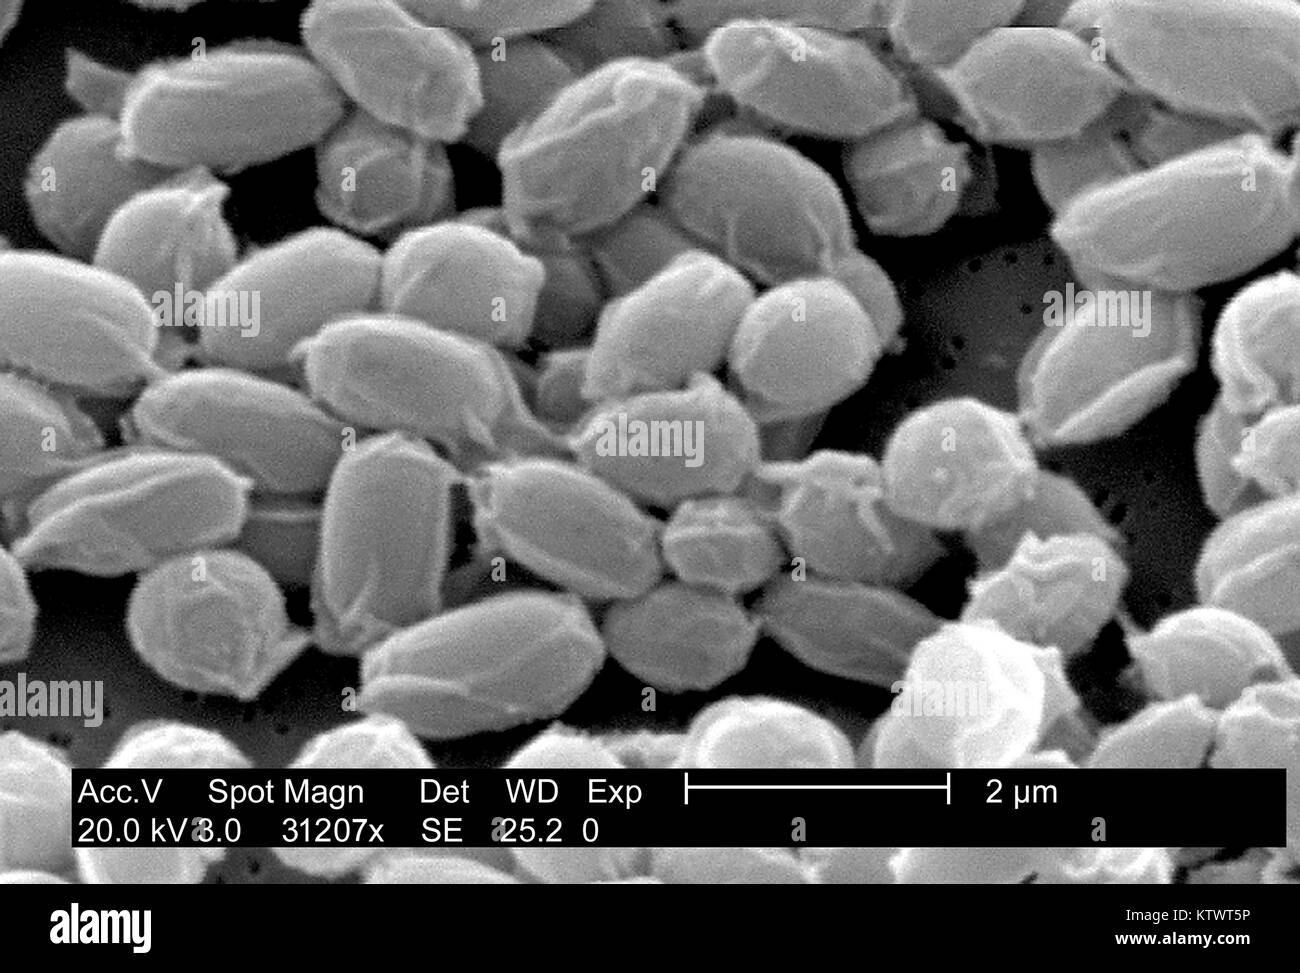 Sous un très haut niveau d'agrandissement de 31, 207X, cette l'analyse des électrons Microphotographie (SEM) dépeint les spores de la souche Sterne de bactéries Bacillus anthracis. Pour une version colorisée de cette image voir PHIL 10023. L'une des principales caractéristiques de la souche Sterne de B. anthracis est la surface ridée de la protéine coat de ces spores bactériennes. Ces spores peuvent vivre pendant de nombreuses années, qui permet à la bactérie de survivre dans un état dormant. Image courtoisie CDC/Laura Rose, 2002. Banque D'Images